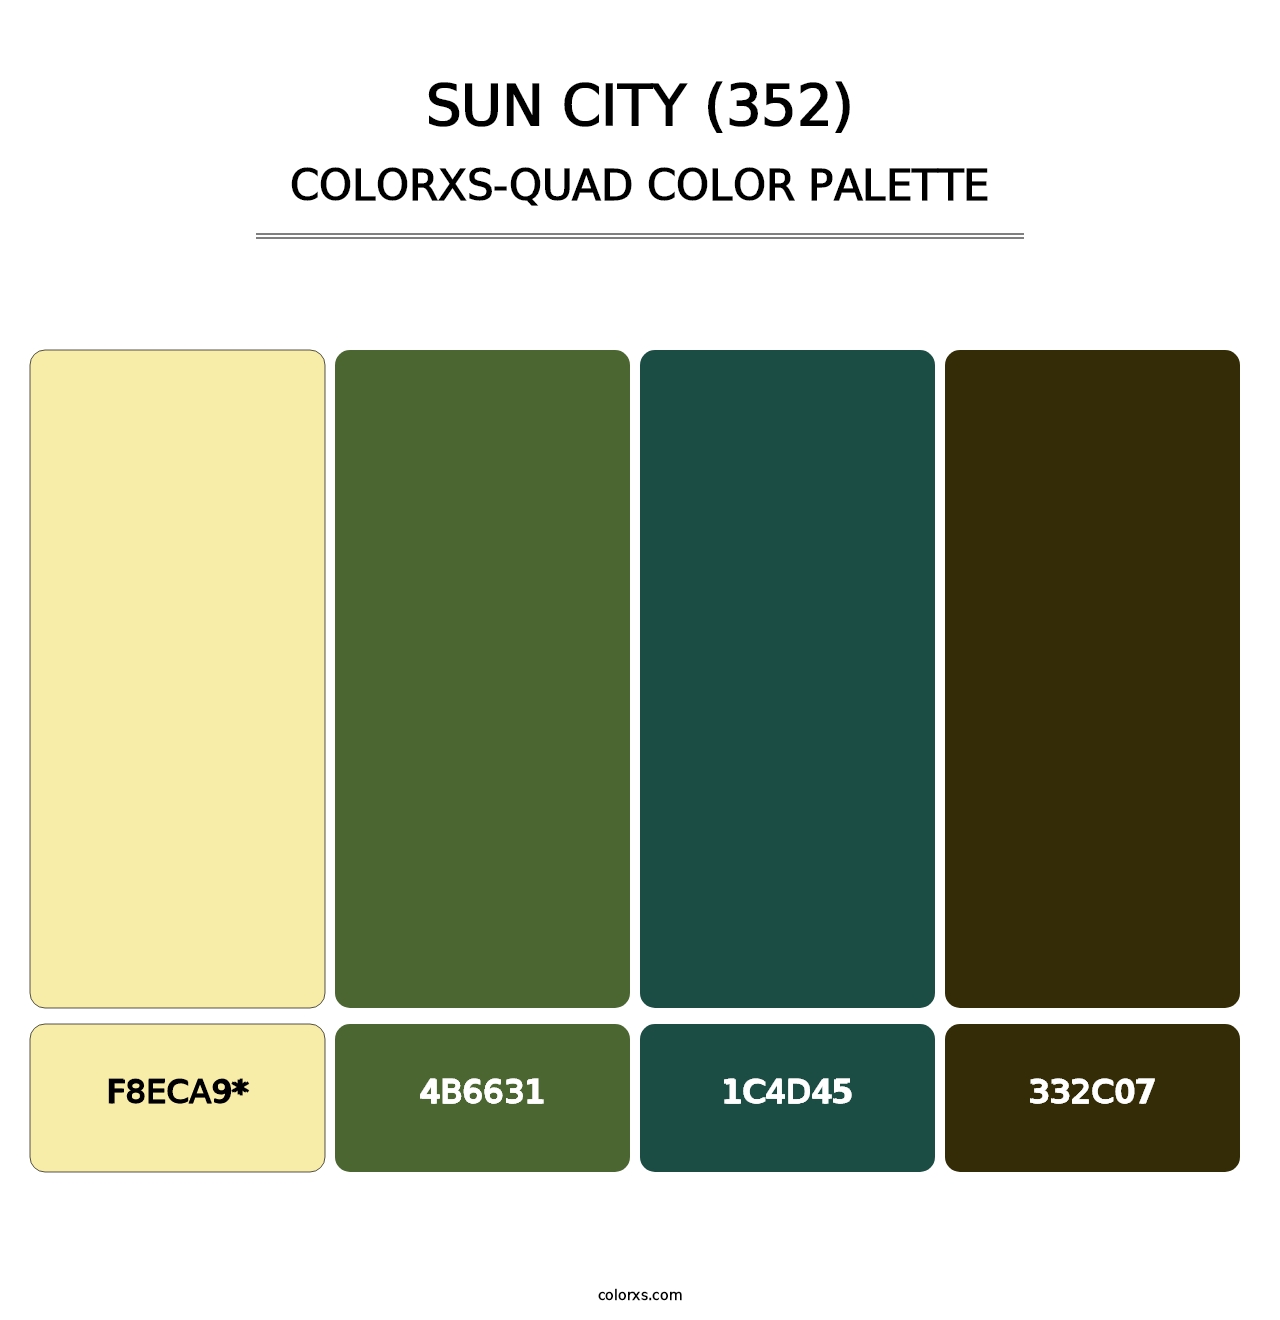 Sun City (352) - Colorxs Quad Palette